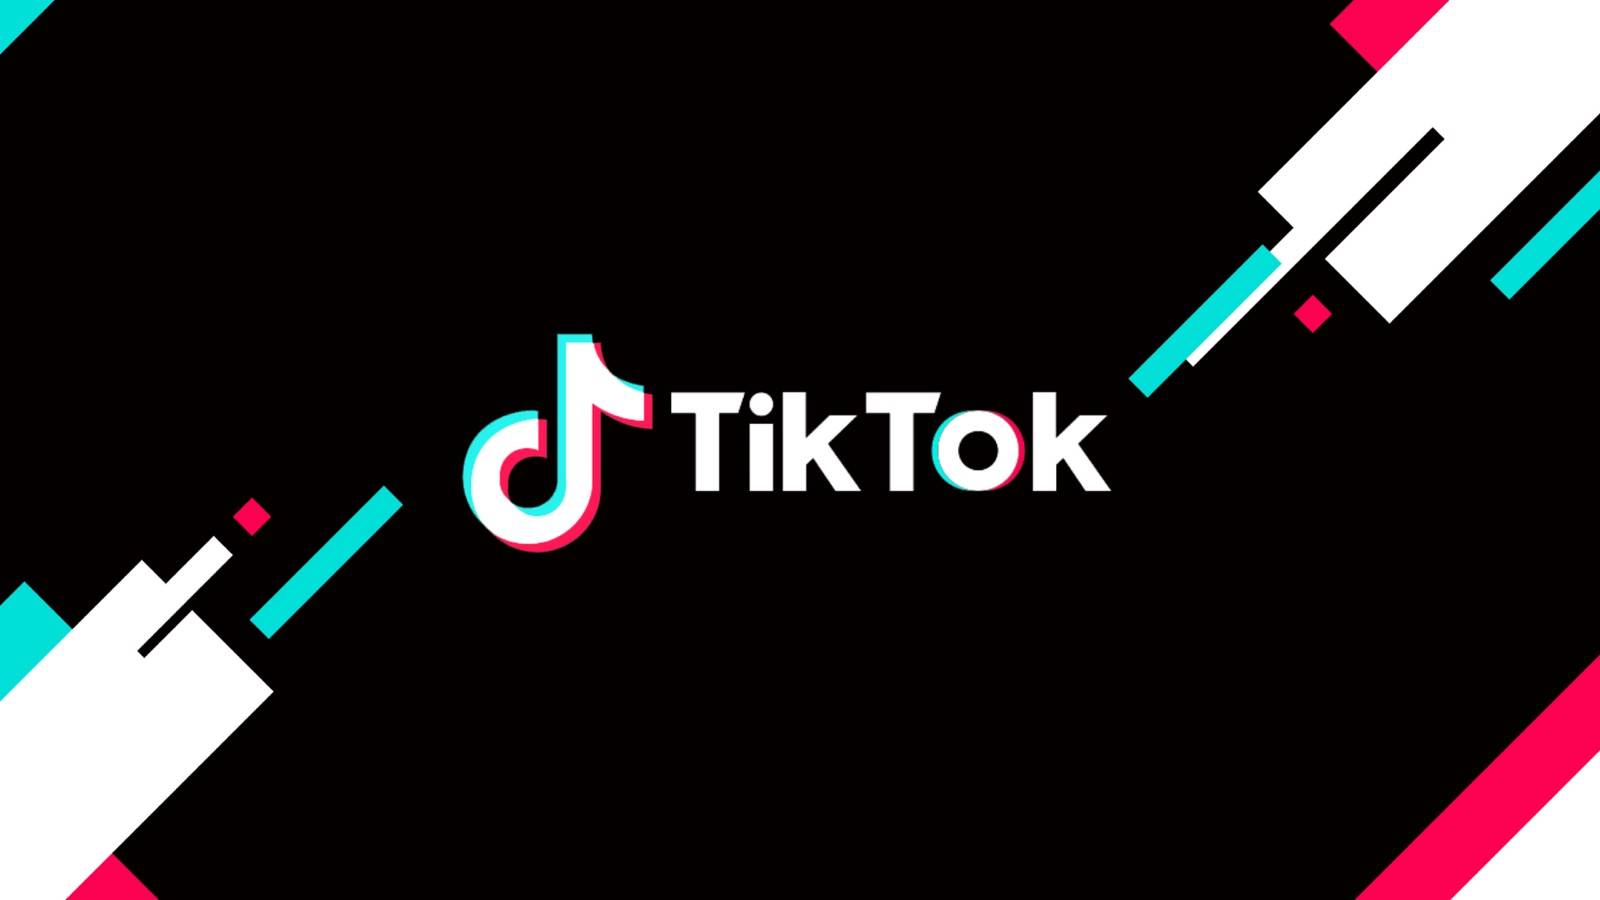 La mise à jour TikTok apporte des modifications aux téléphones du monde entier